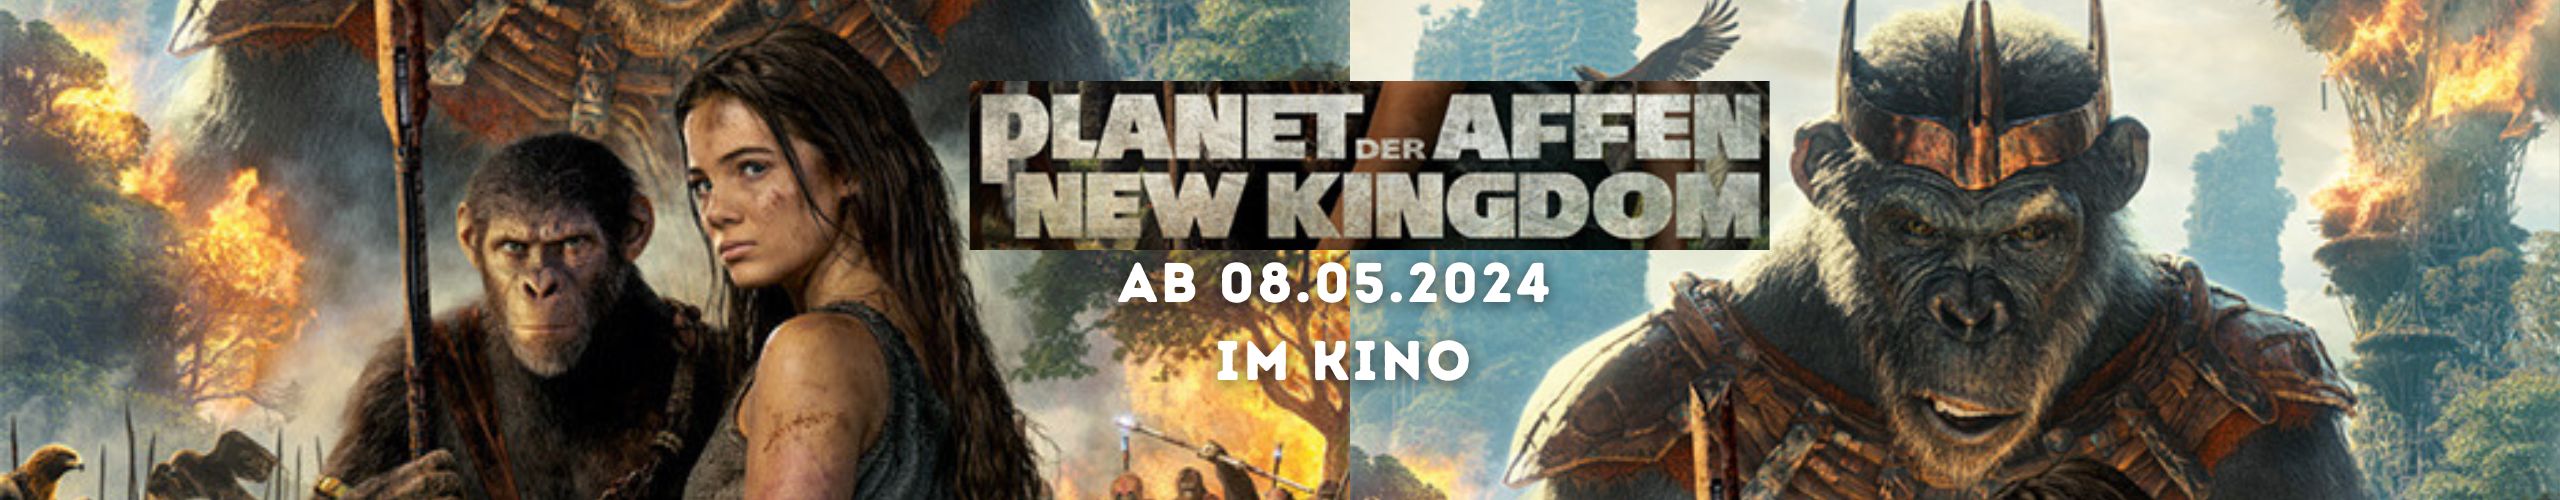 Planet der Affen - New Kingdom